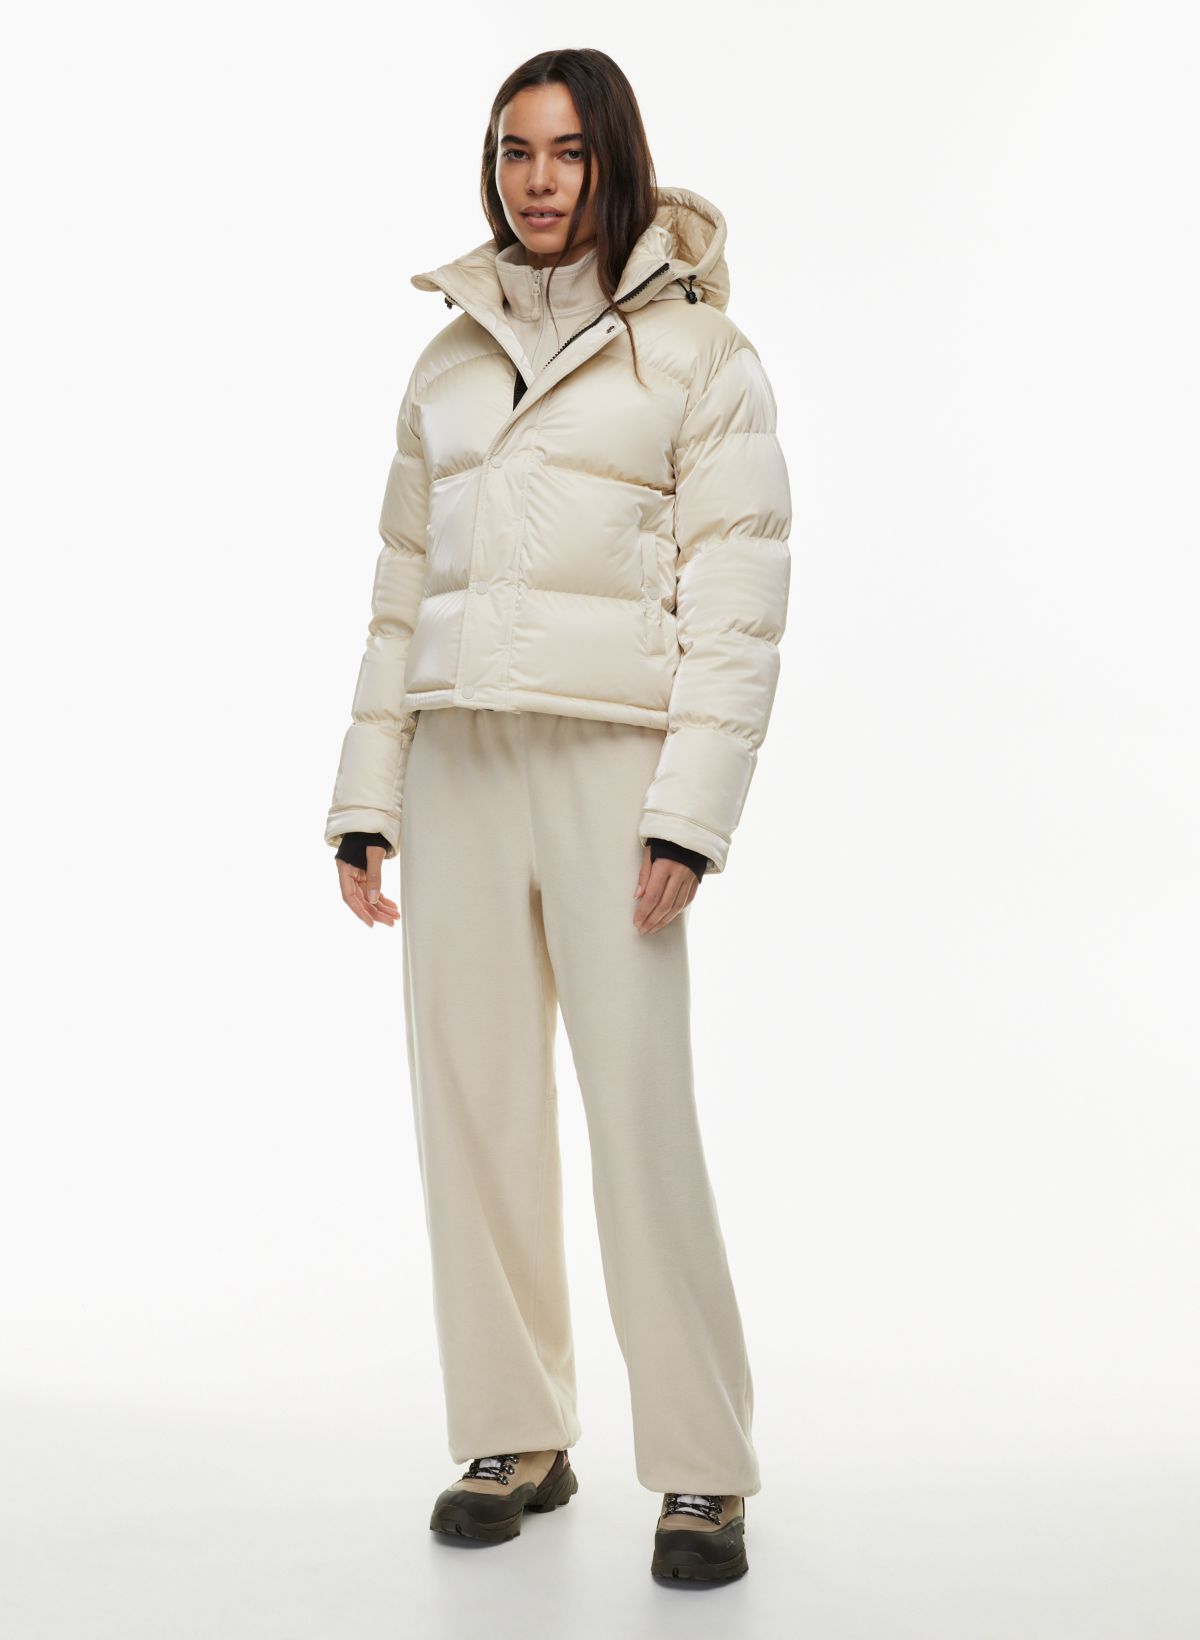 Avalanche Women's Mid-Long Winter Coat Jacket Hoodded Black Size XXS